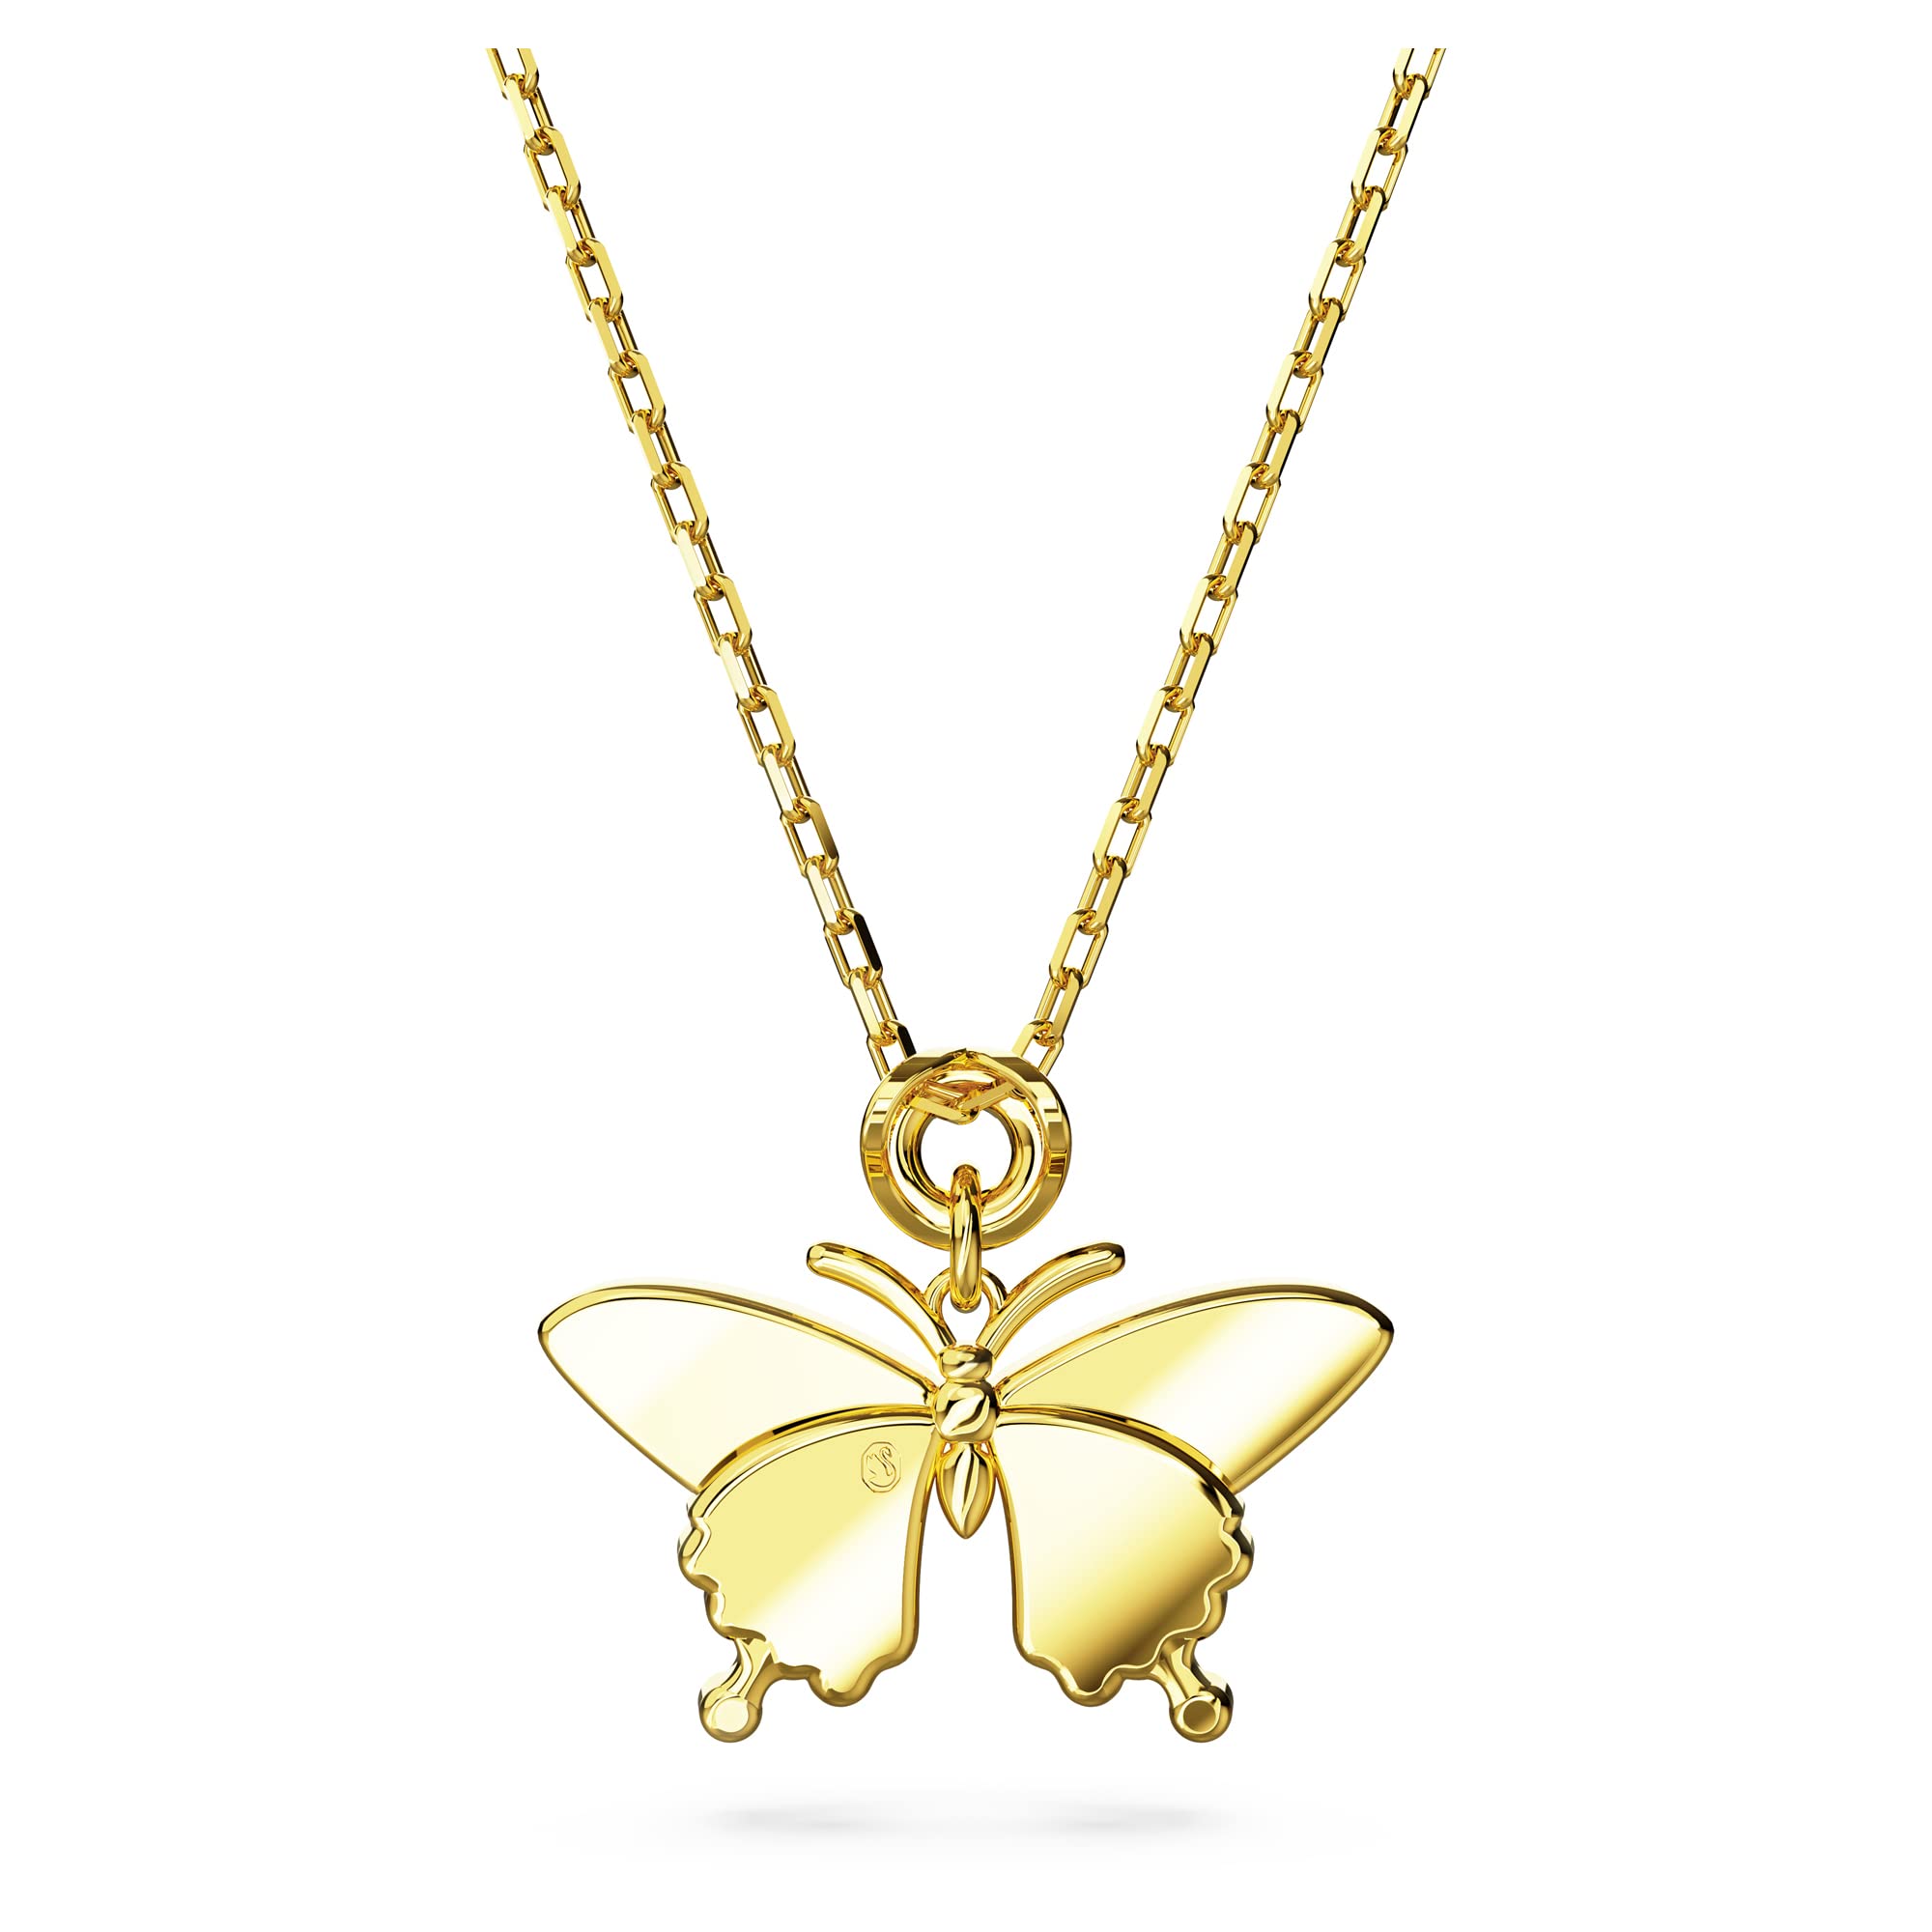 SWAROVSKI Idyllia Butterfly Crystal Jewelry Collection